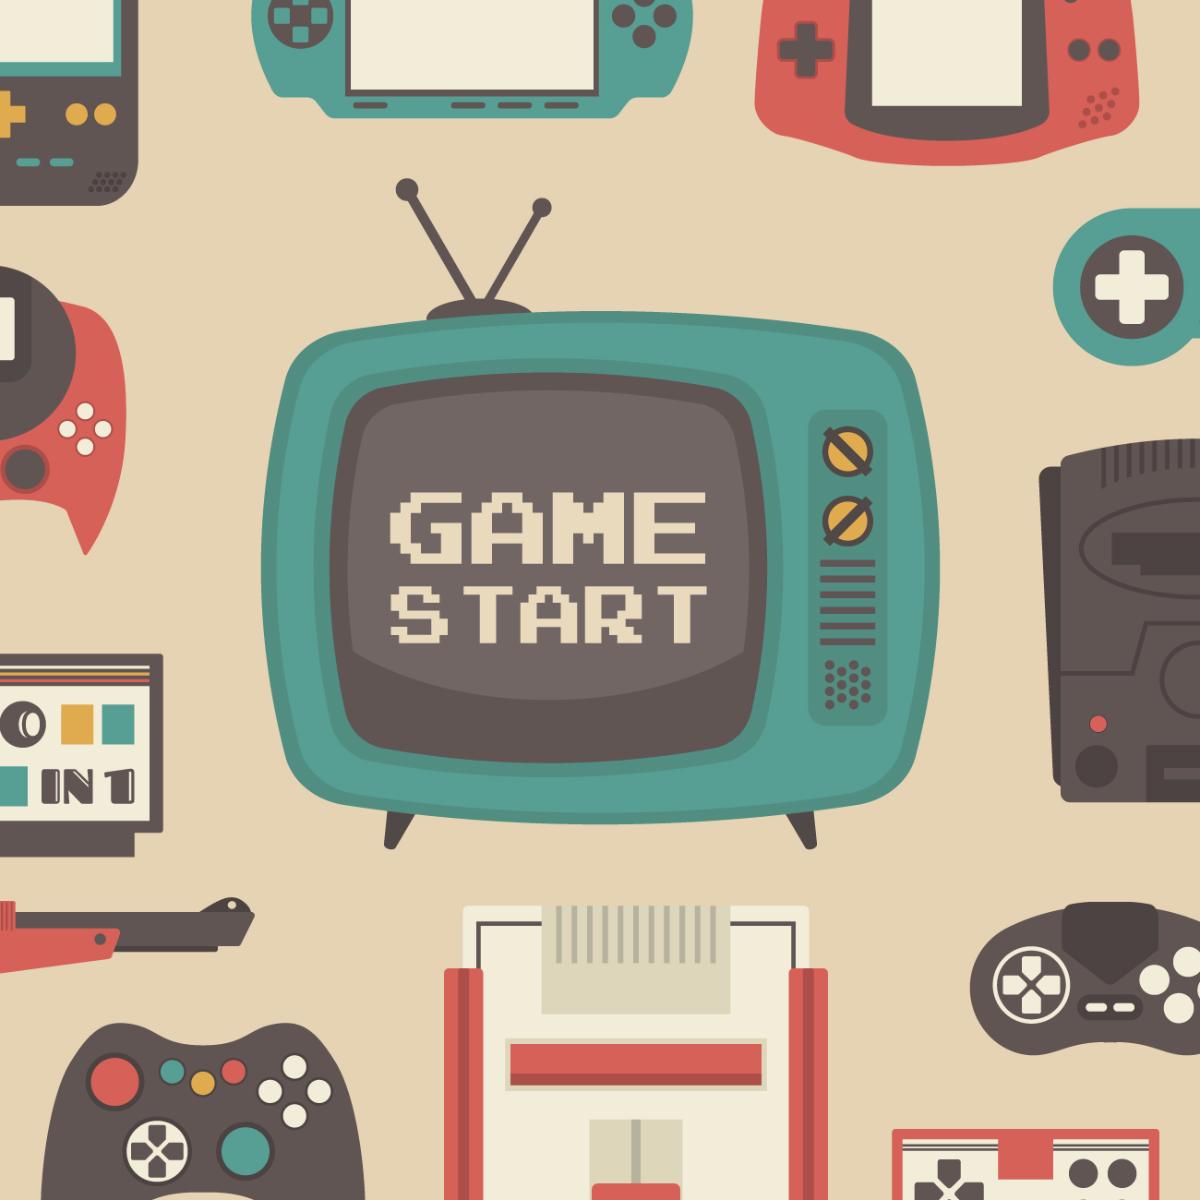 Eine Illustration von einem Röhrenfernseher, umgeben von verschiedenen Konsolen. Auf dem Bildschirm ist der Text "Game Start" zu lesen.